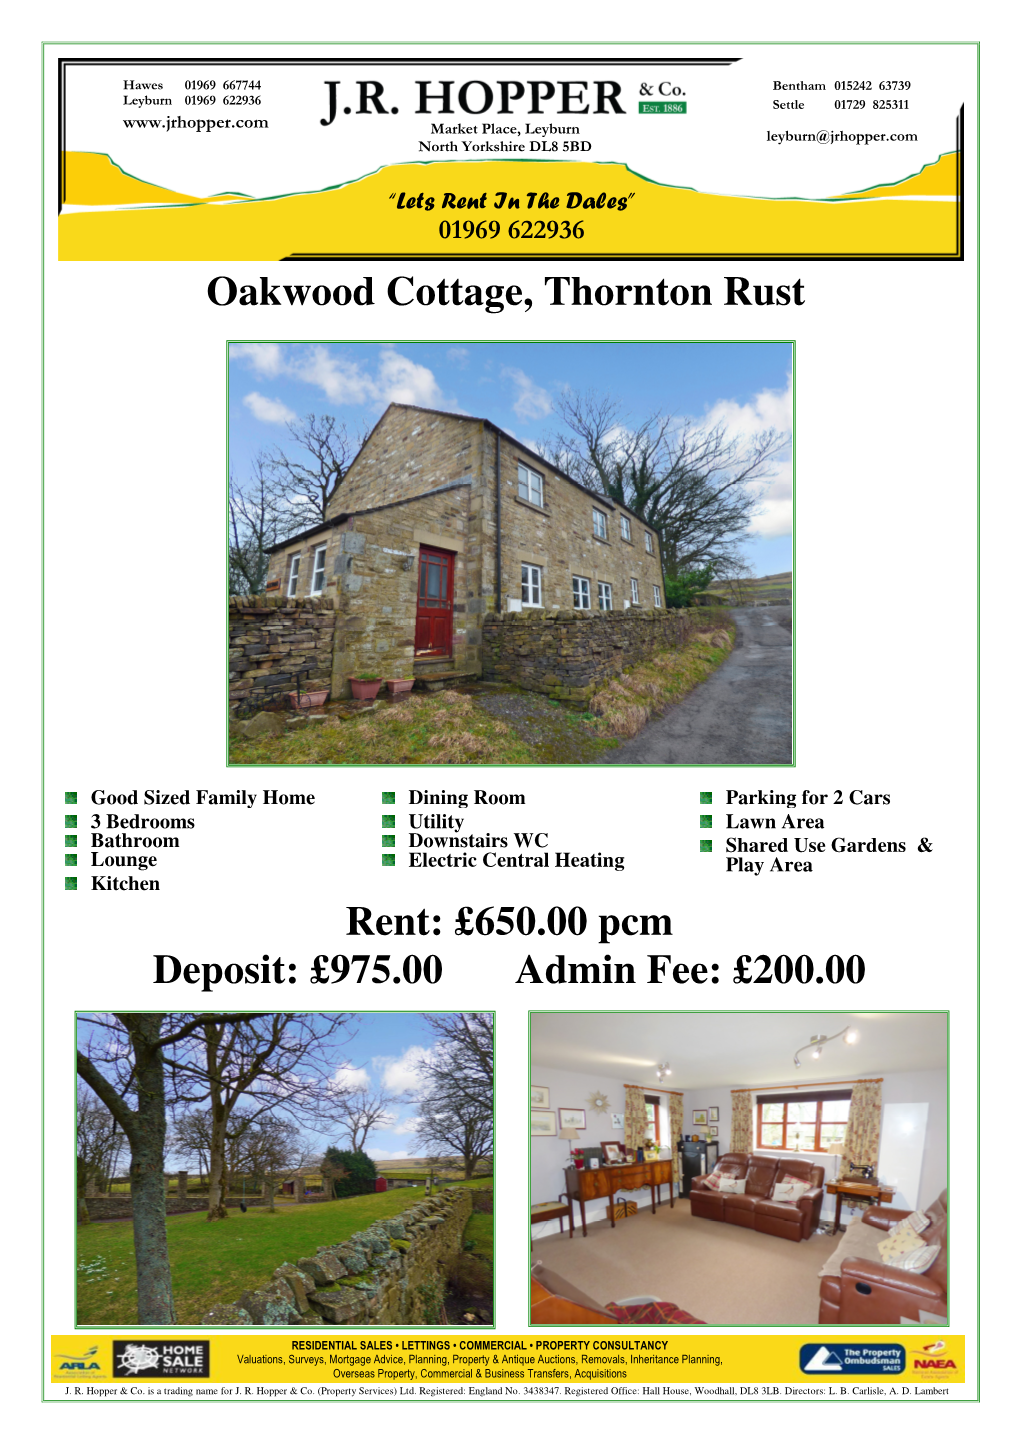 Oakwood Cottage, Thornton Rust Rent